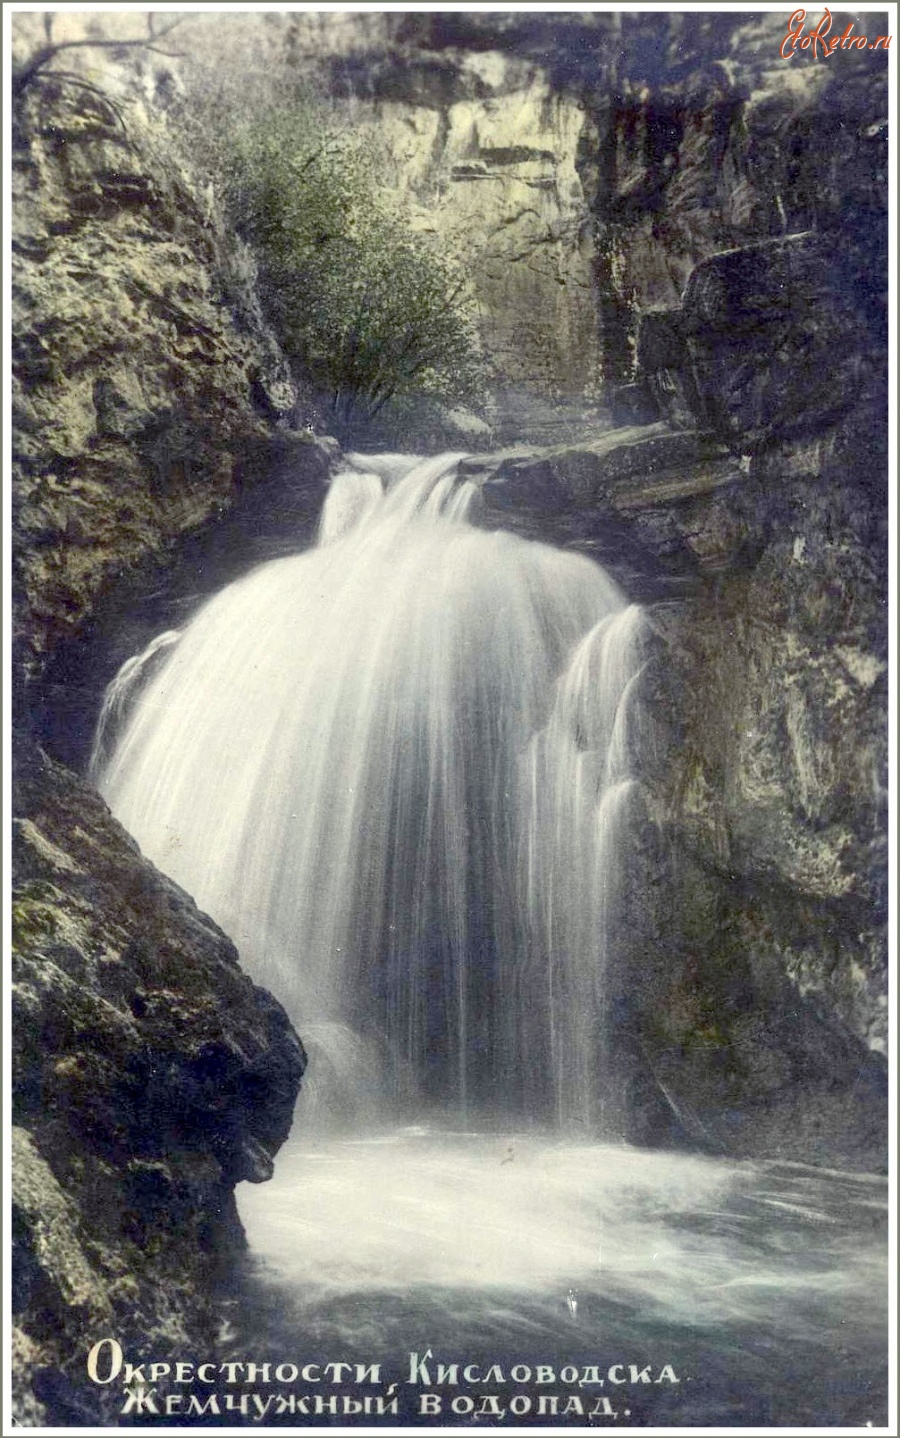 Кисловодск - Жемчужный водопад, в цвете